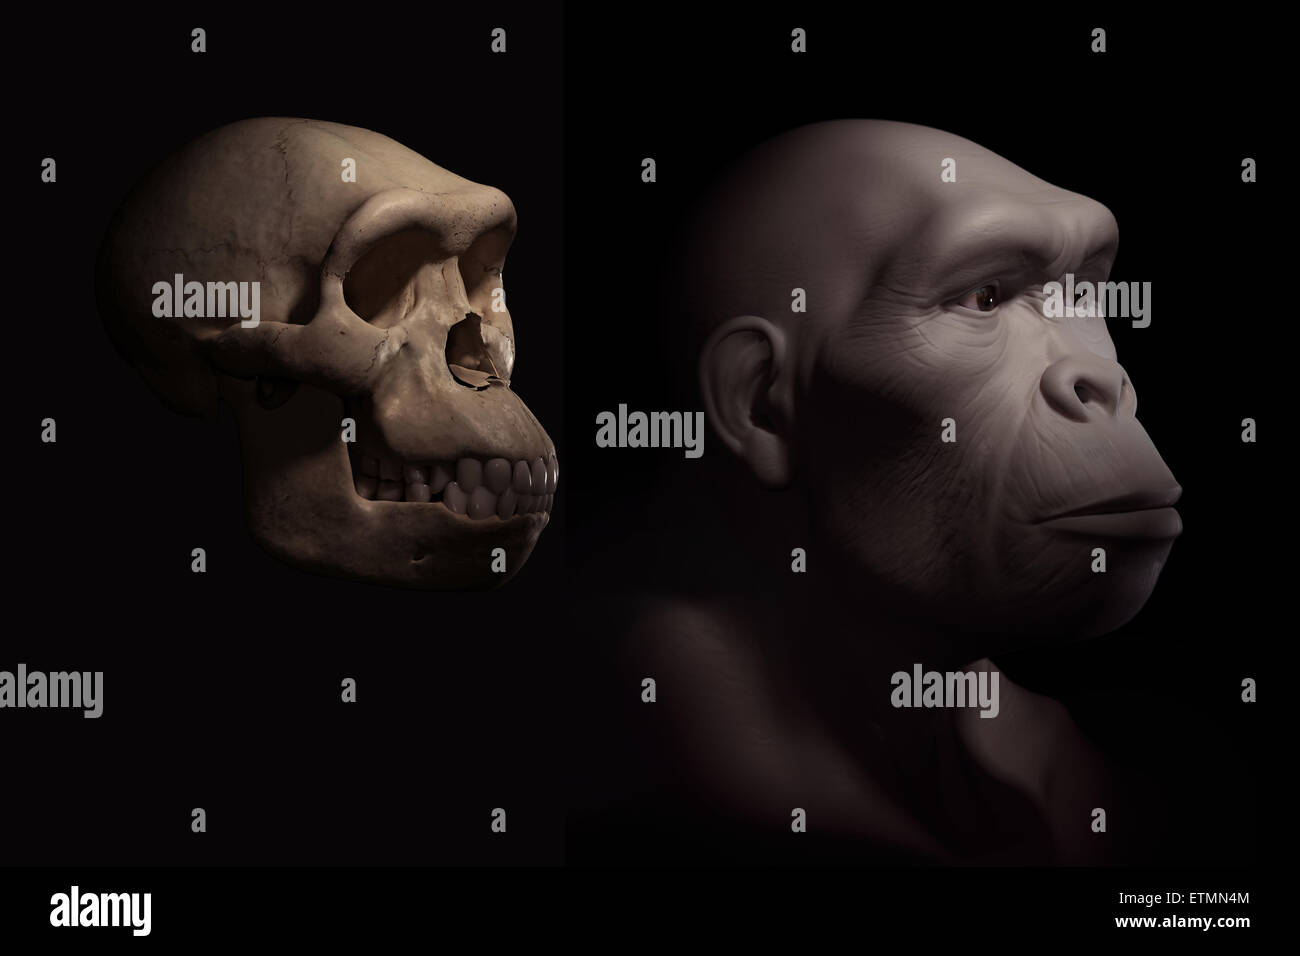 Depiction of a Homo Habilis next to a Homo Habilis skull for comparison. Homo Habilis is an extinct genus of hominids and ancestor to Homo Sapiens. Stock Photo